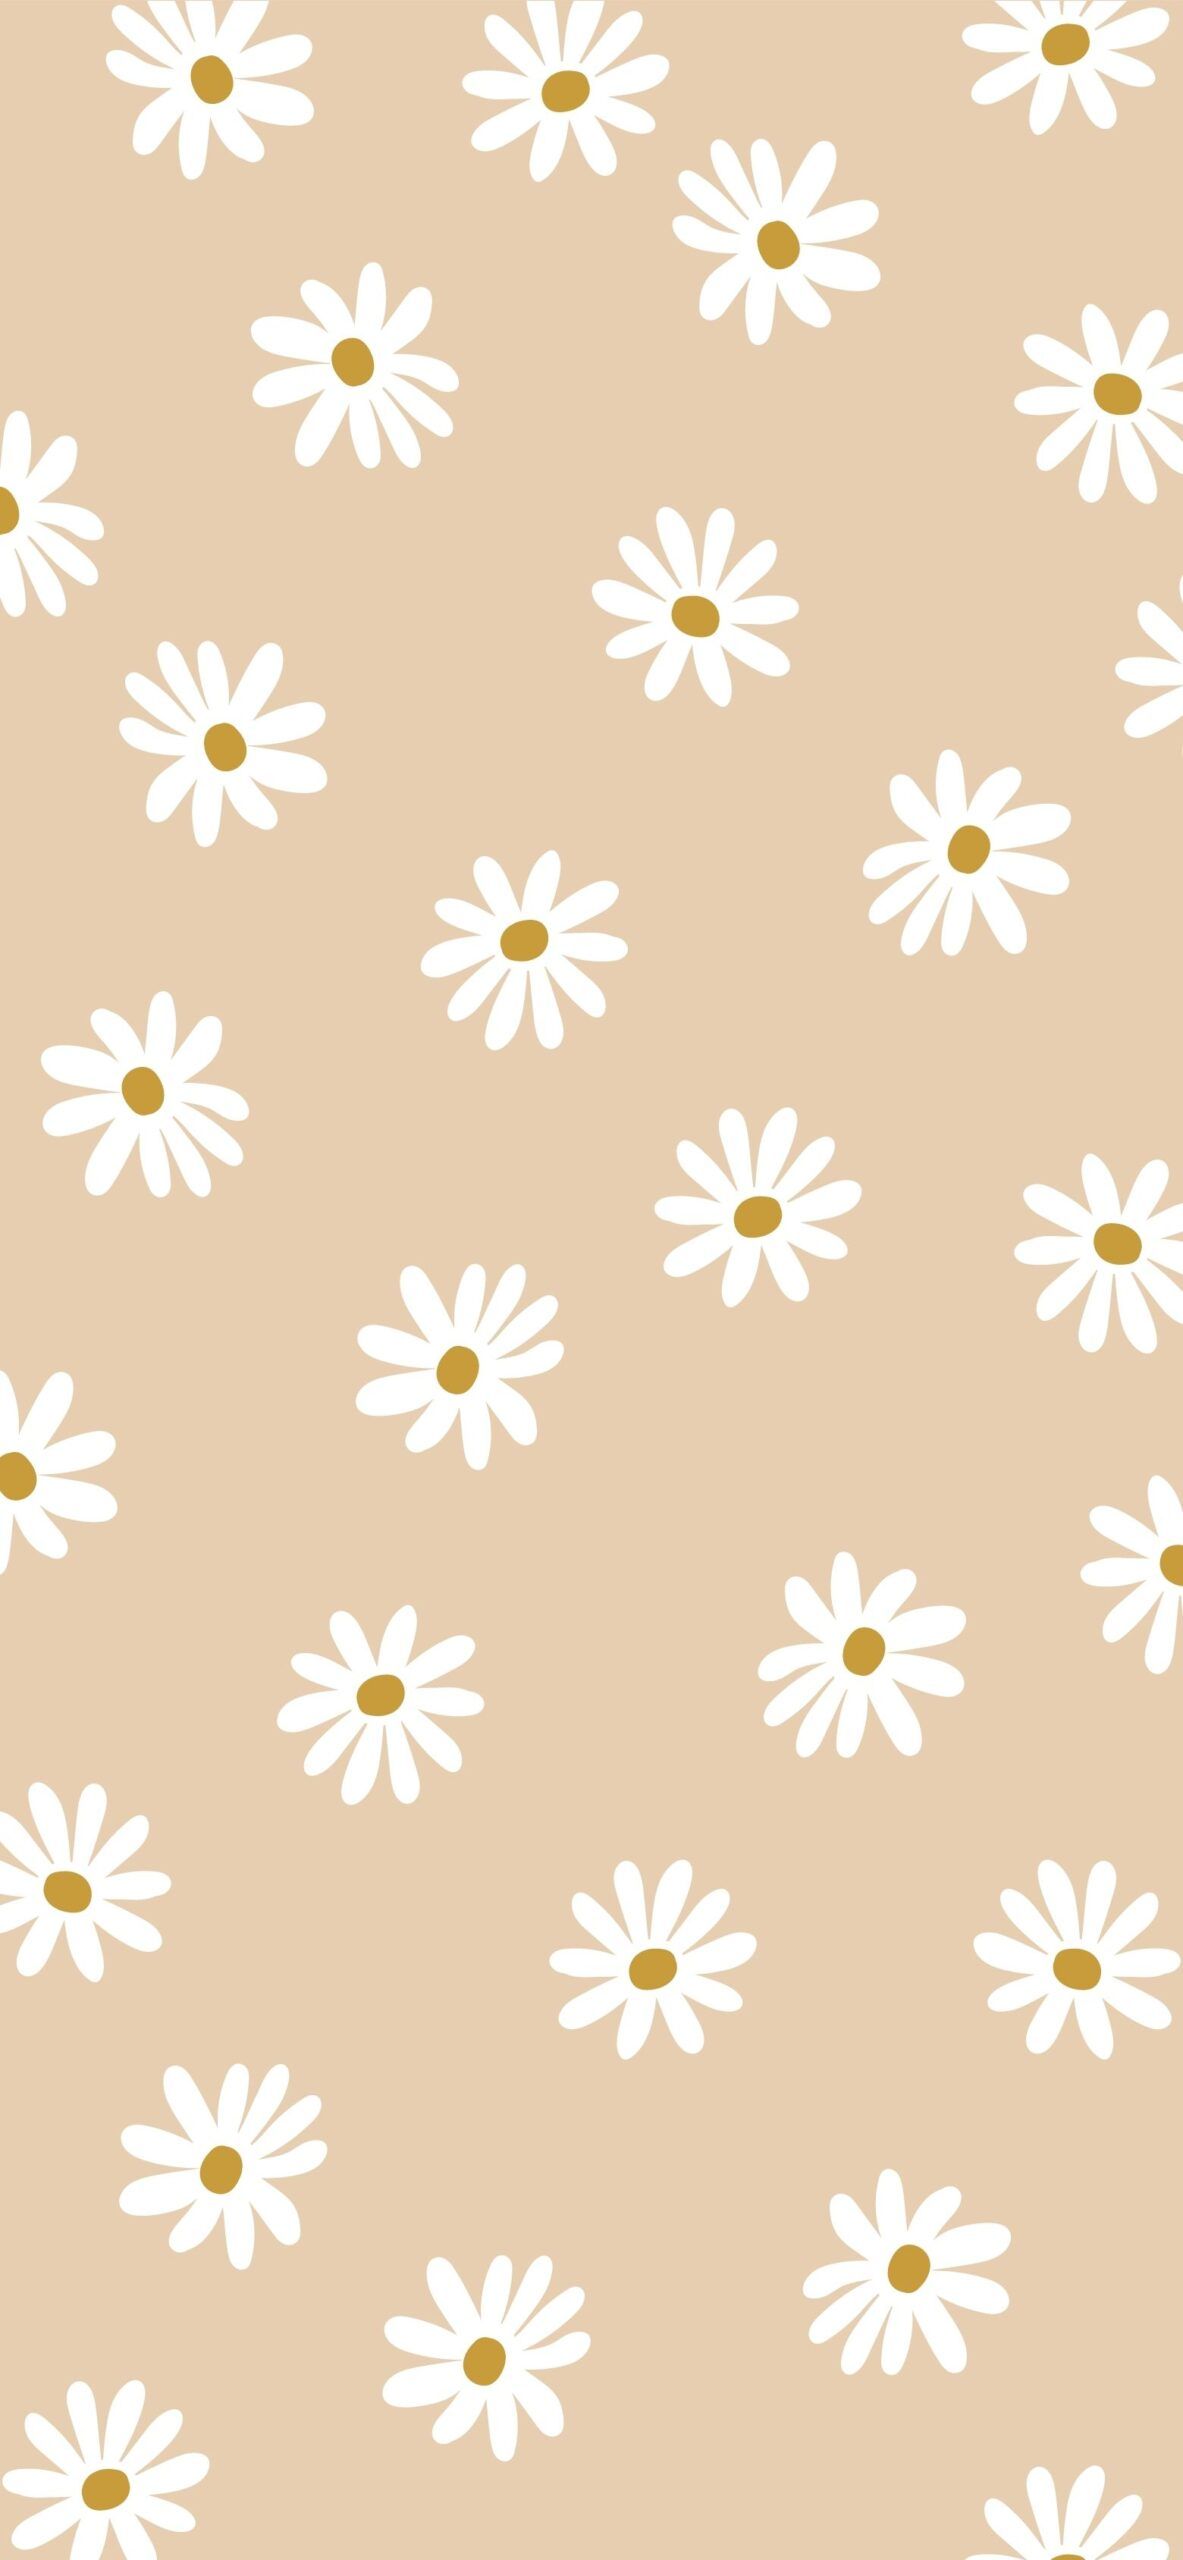 A pattern of white daisies on beige - Beige, clean, minimalist beige